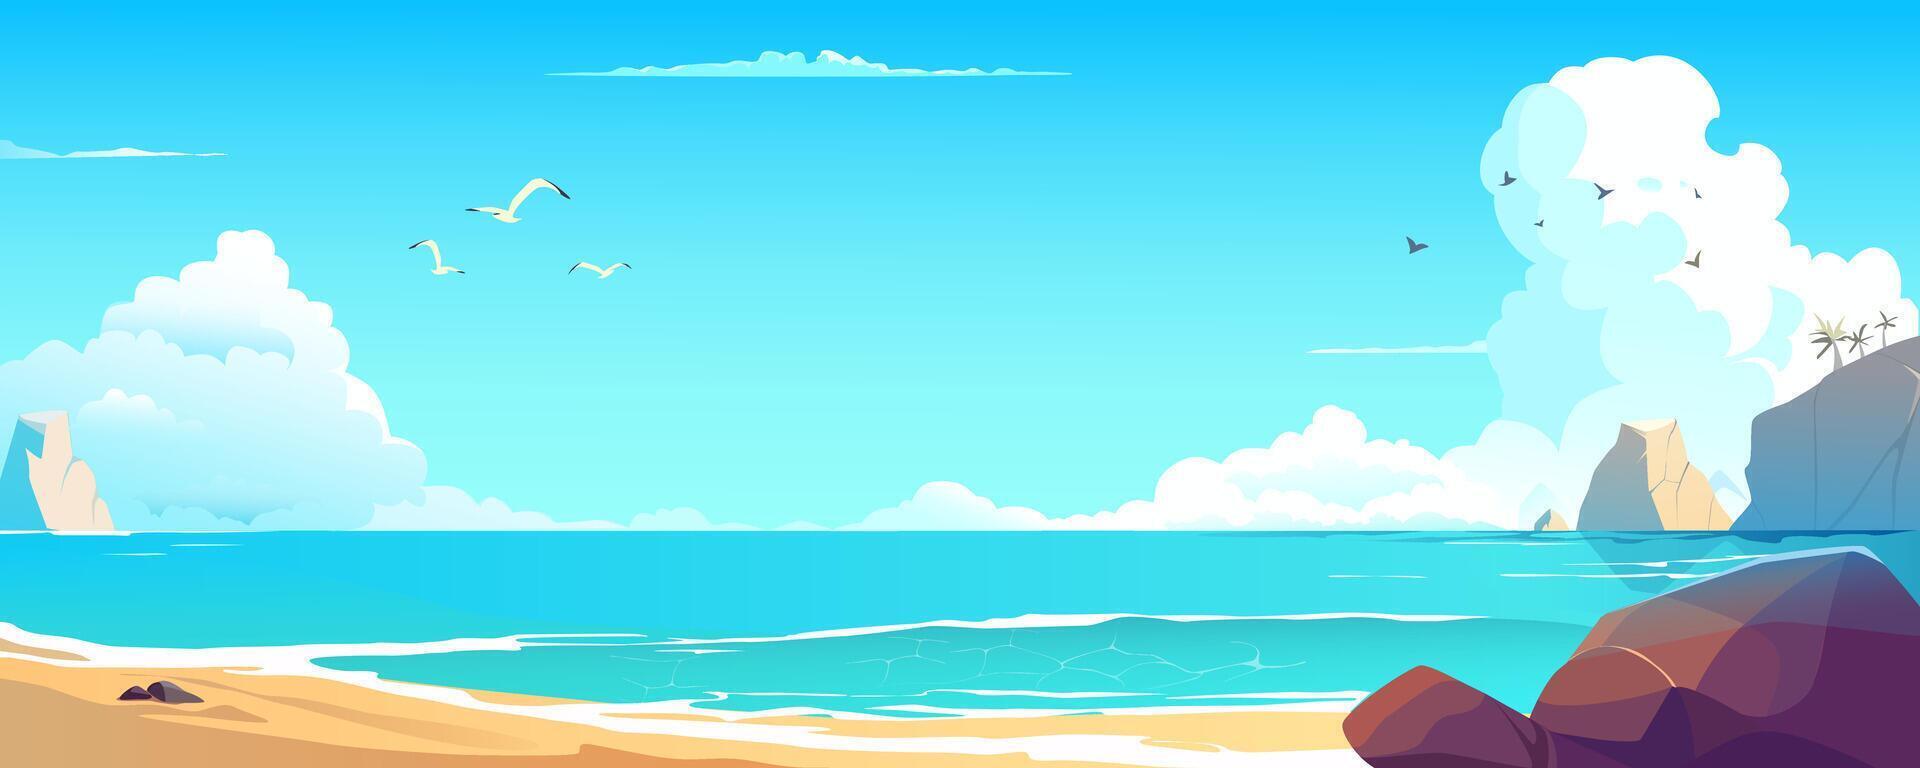 Meer Bucht Hintergrund Banner im Karikatur Design. tropisch Sand Strand Landschaft mit Steine, Palme Bäume auf Felsen, Ozean Küste mit Tag Wolken, fliegend Möwen und Vögel. Karikatur Illustration vektor